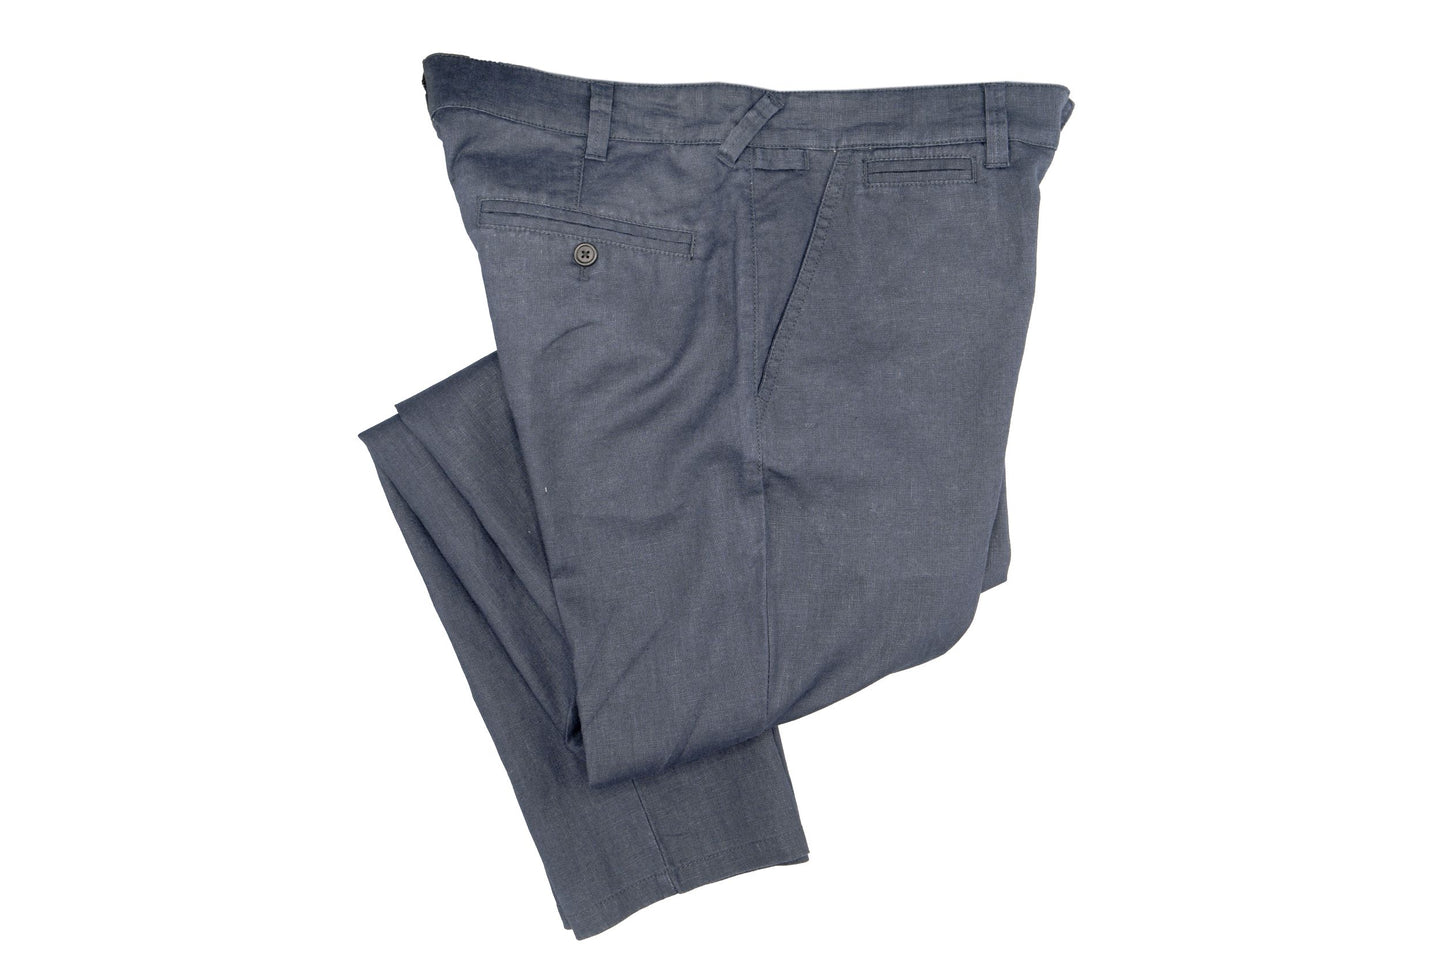 Cutler & Co - Hastin Linen Trouser - Slate